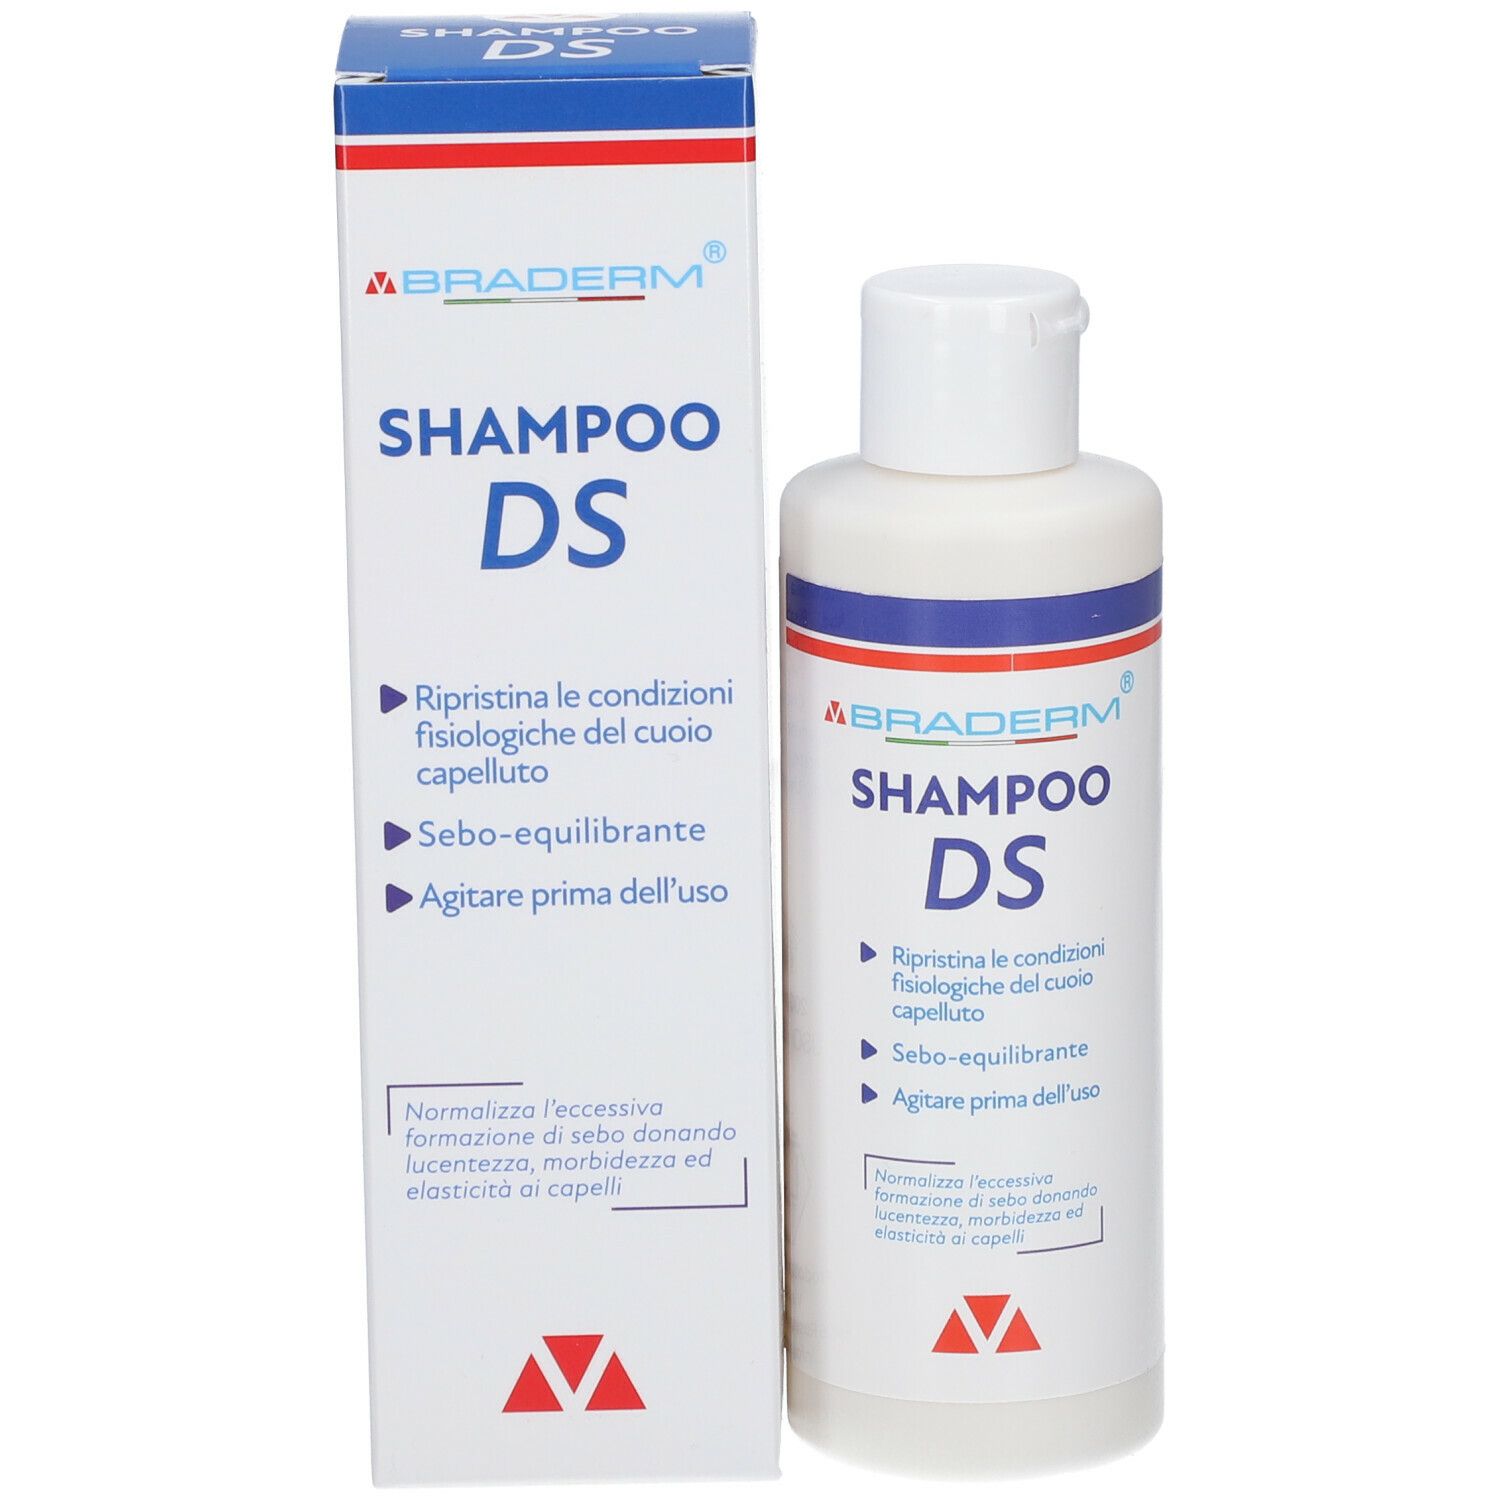 BRADERM® Shampoo Ds